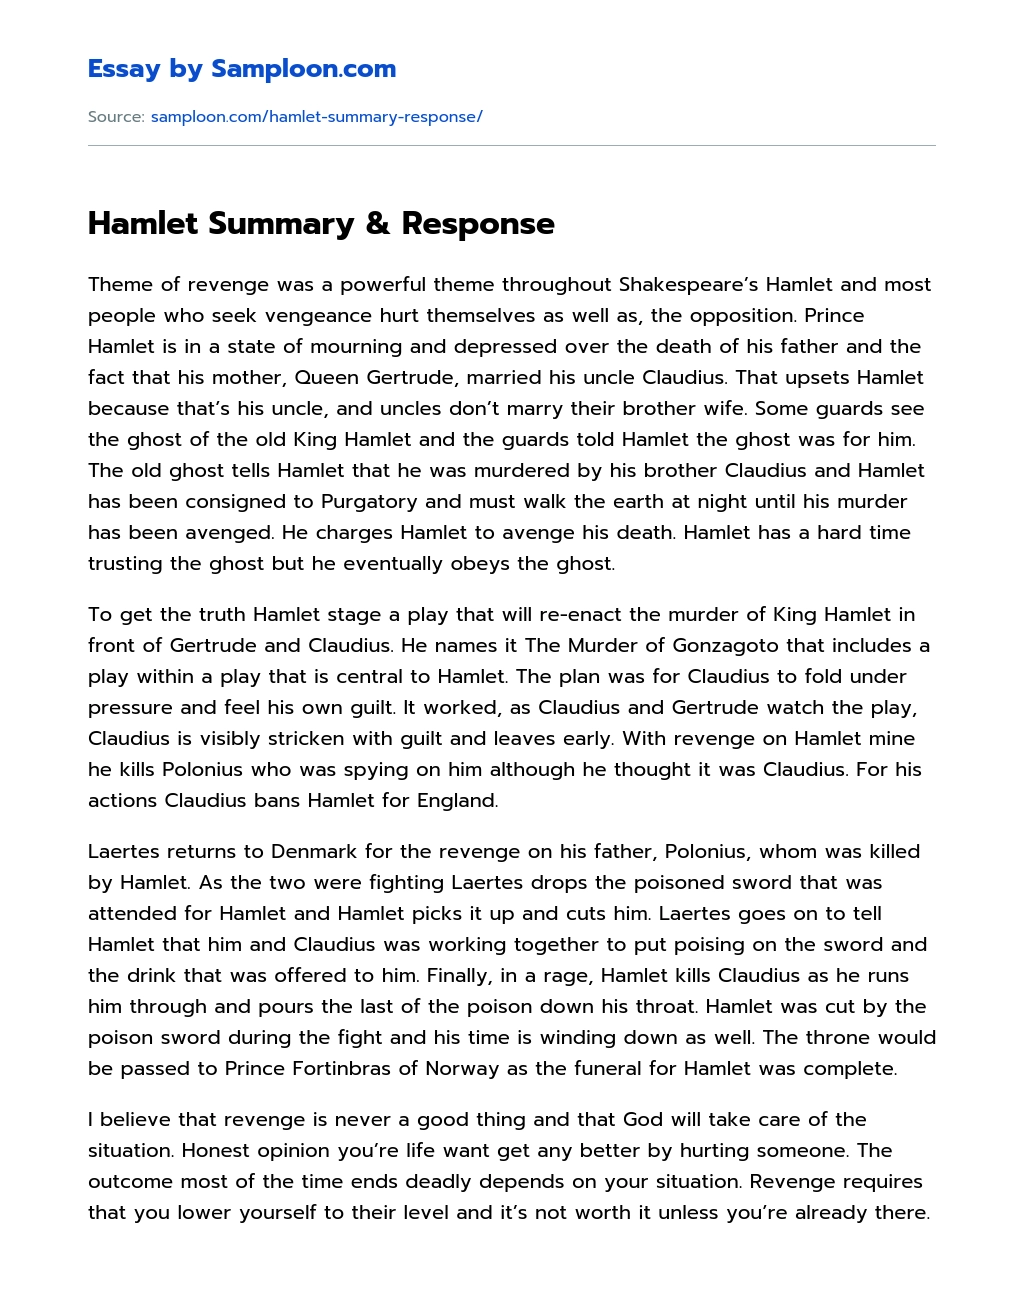 Hamlet Summary & Response Character Analysis essay